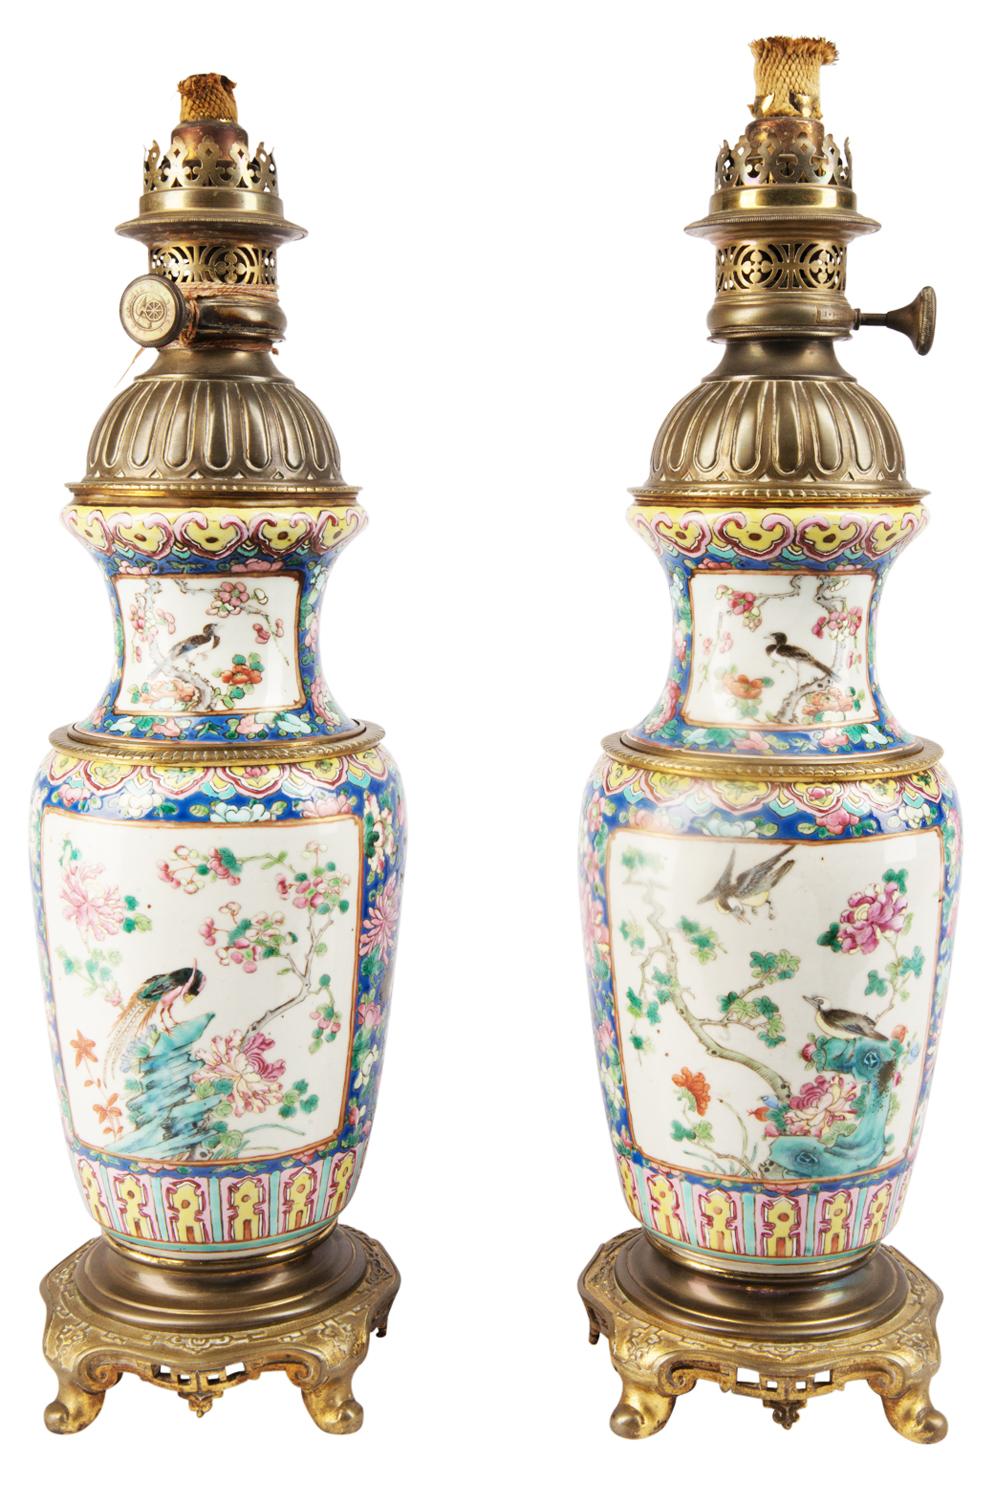 Paire de vases / lampes chinoises de bonne qualité, datant du 19ème siècle, de style Famille rose. Chacune avec un fond bleu et jaune, des panneaux représentant des oiseaux et des fleurs exotiques. Couvercles dorés en bronze doré et bases en forme